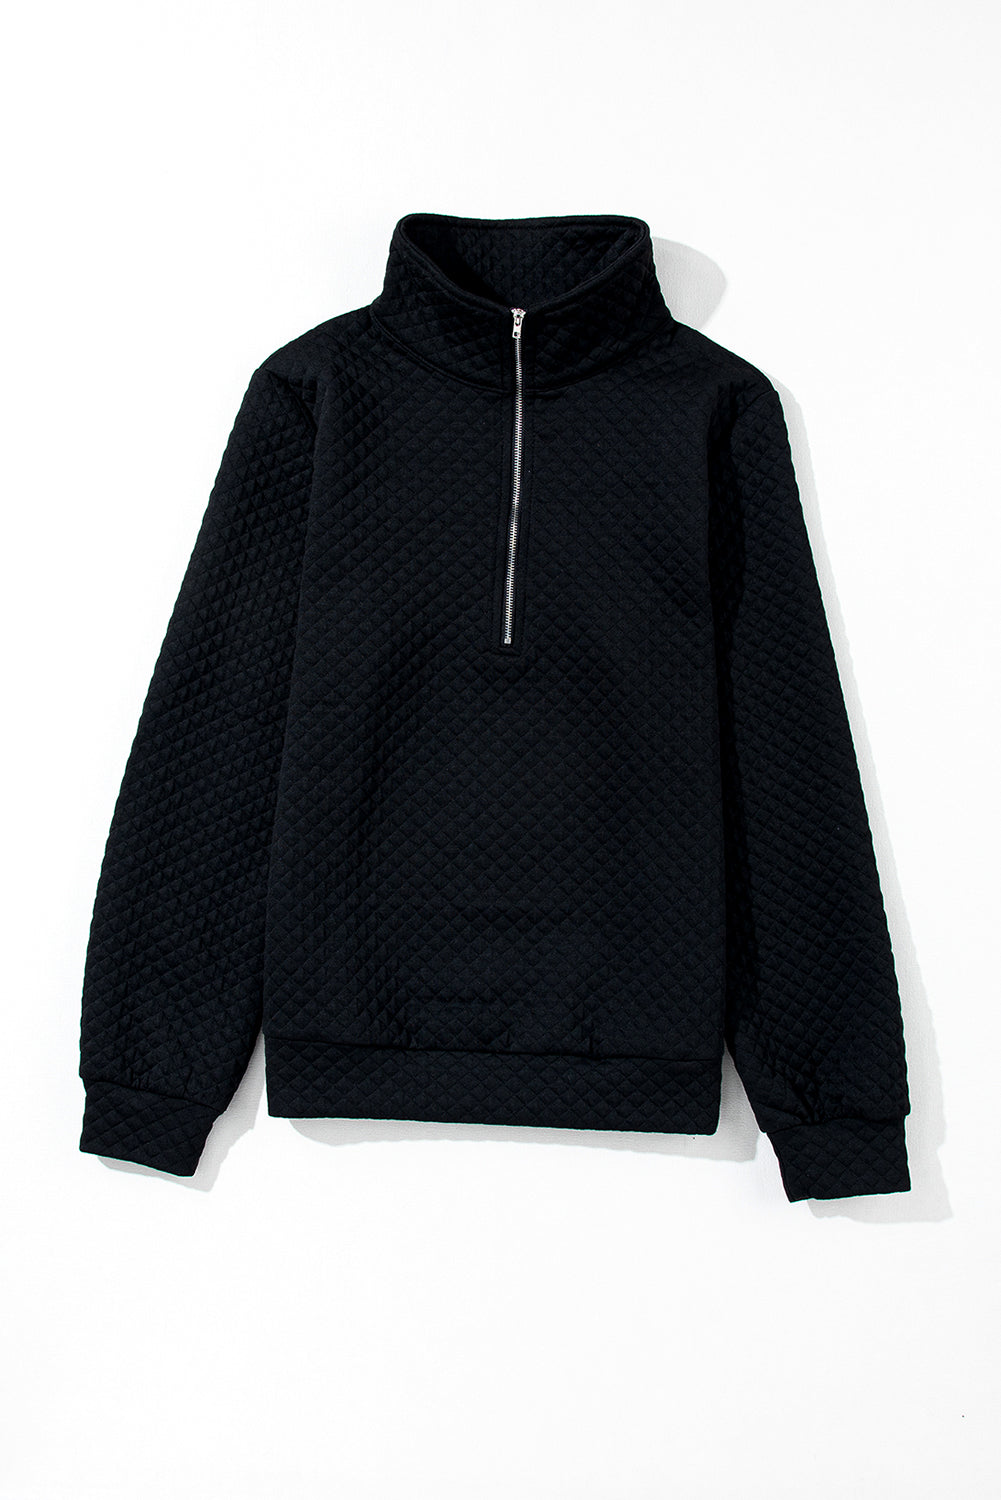 Black Solid Half Zipper Quilted Pullover Sweatshirt-5